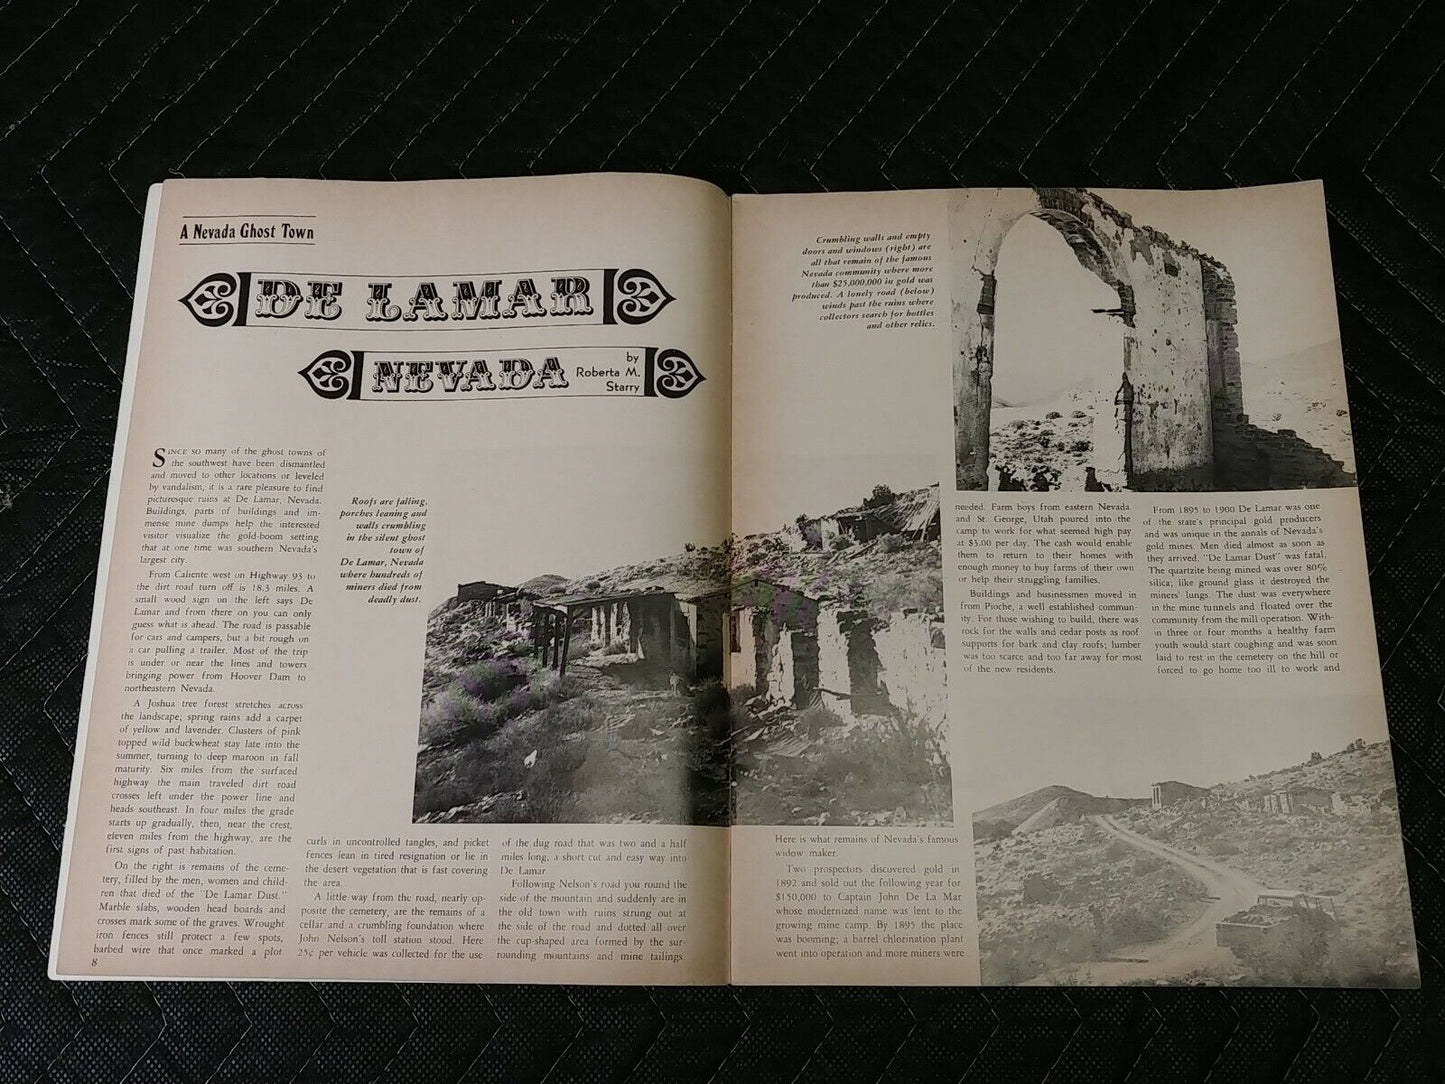 Vintage Desert Magazine March 1971